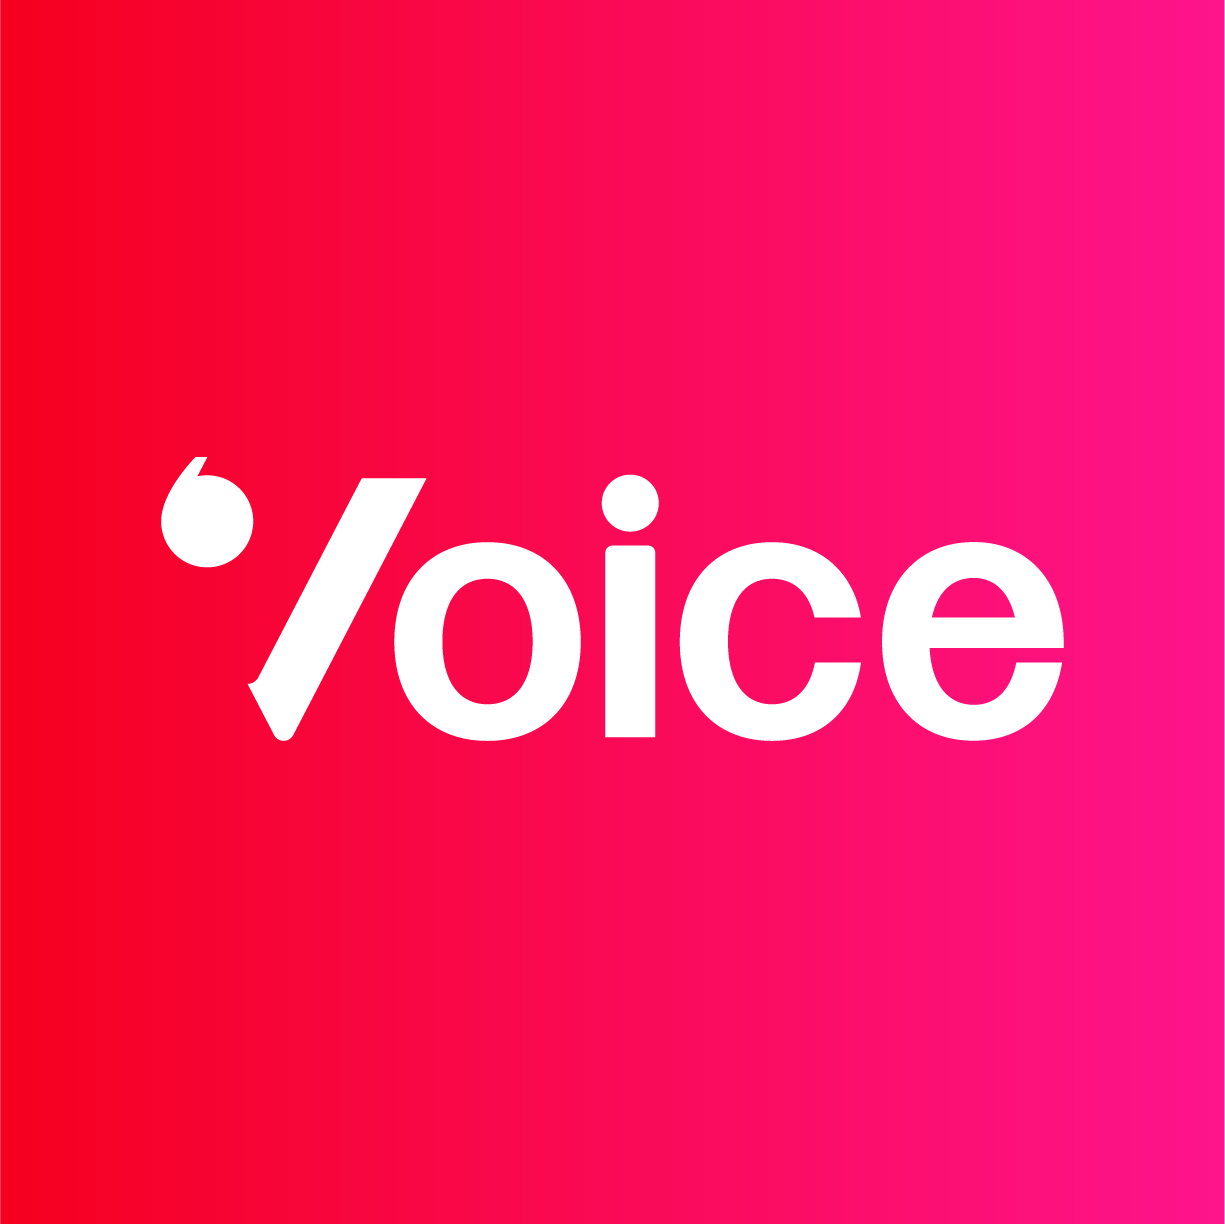 Hero image: Voice HQ